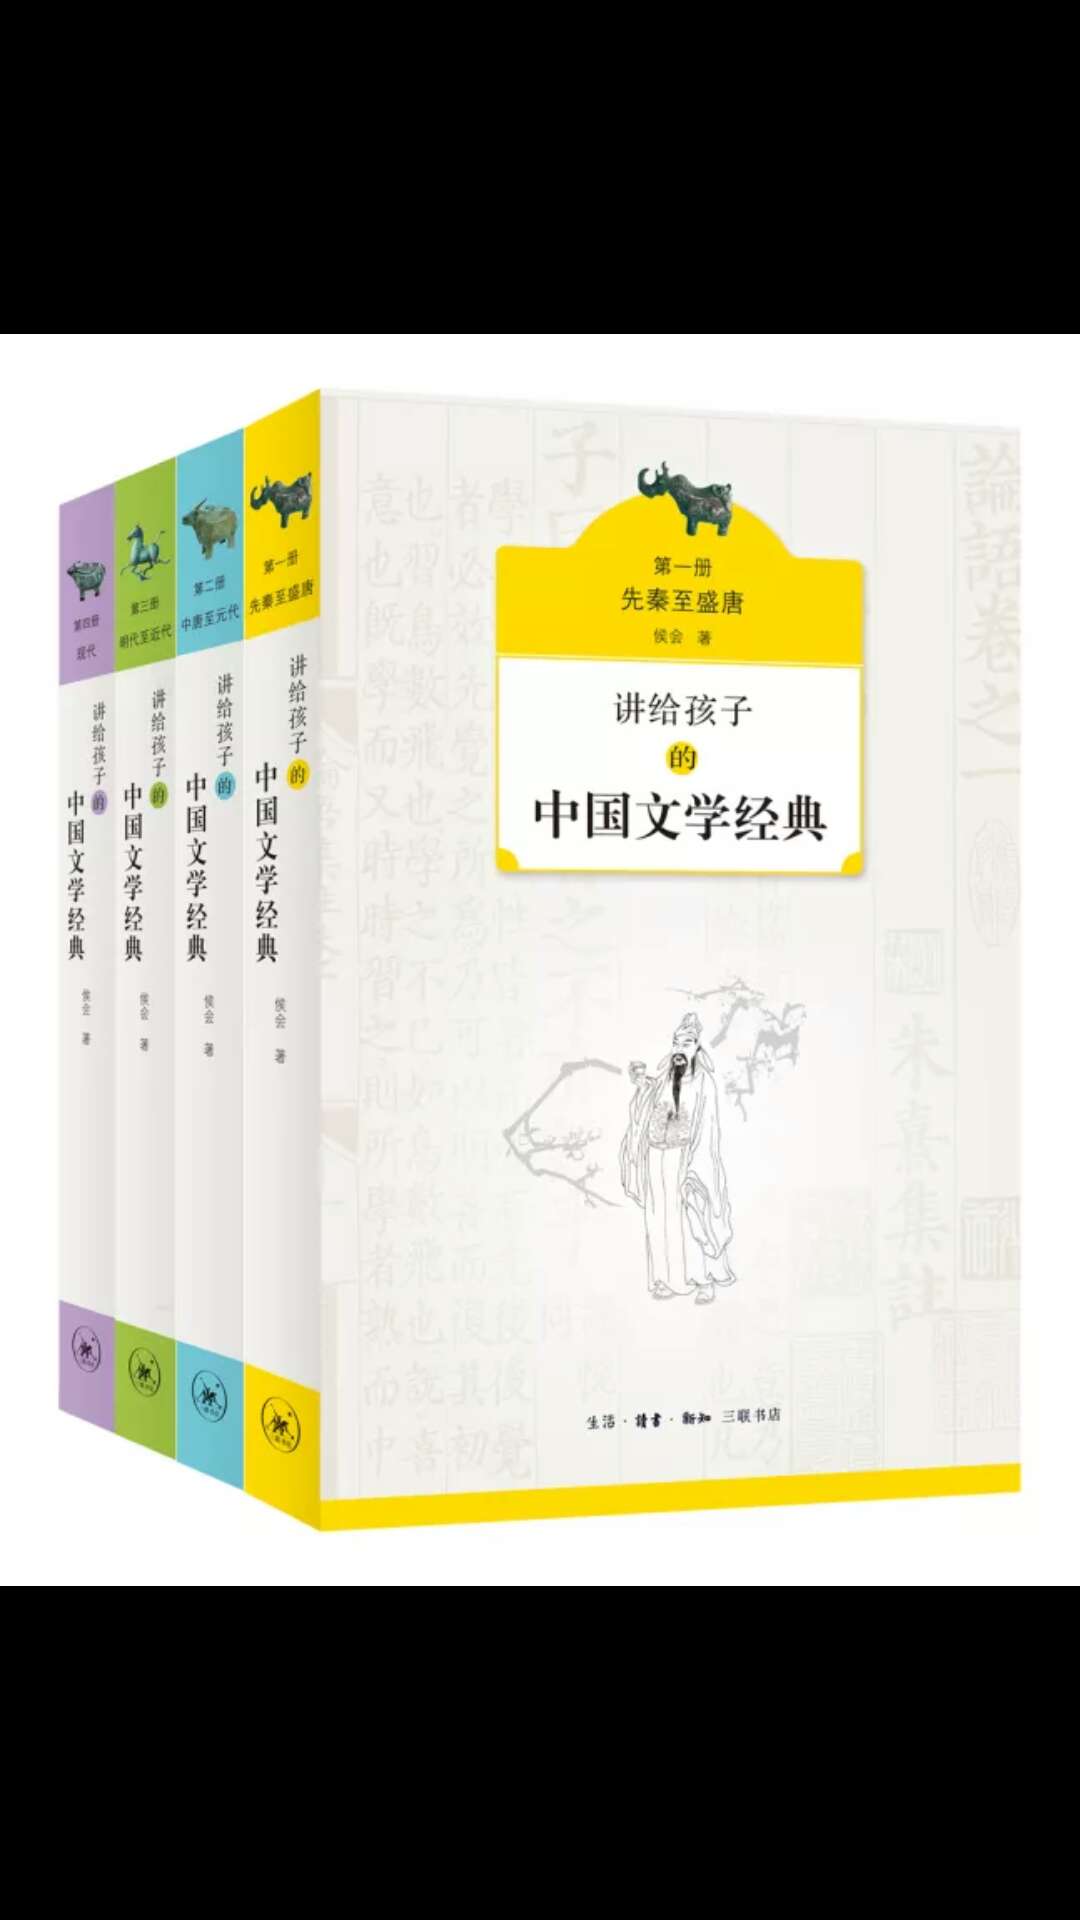 比较全面的写了中国的文学，虽然没处都说的不多（限于篇幅）。能引发孩子读书的兴趣！快递非常快，大过年的也是次日到。